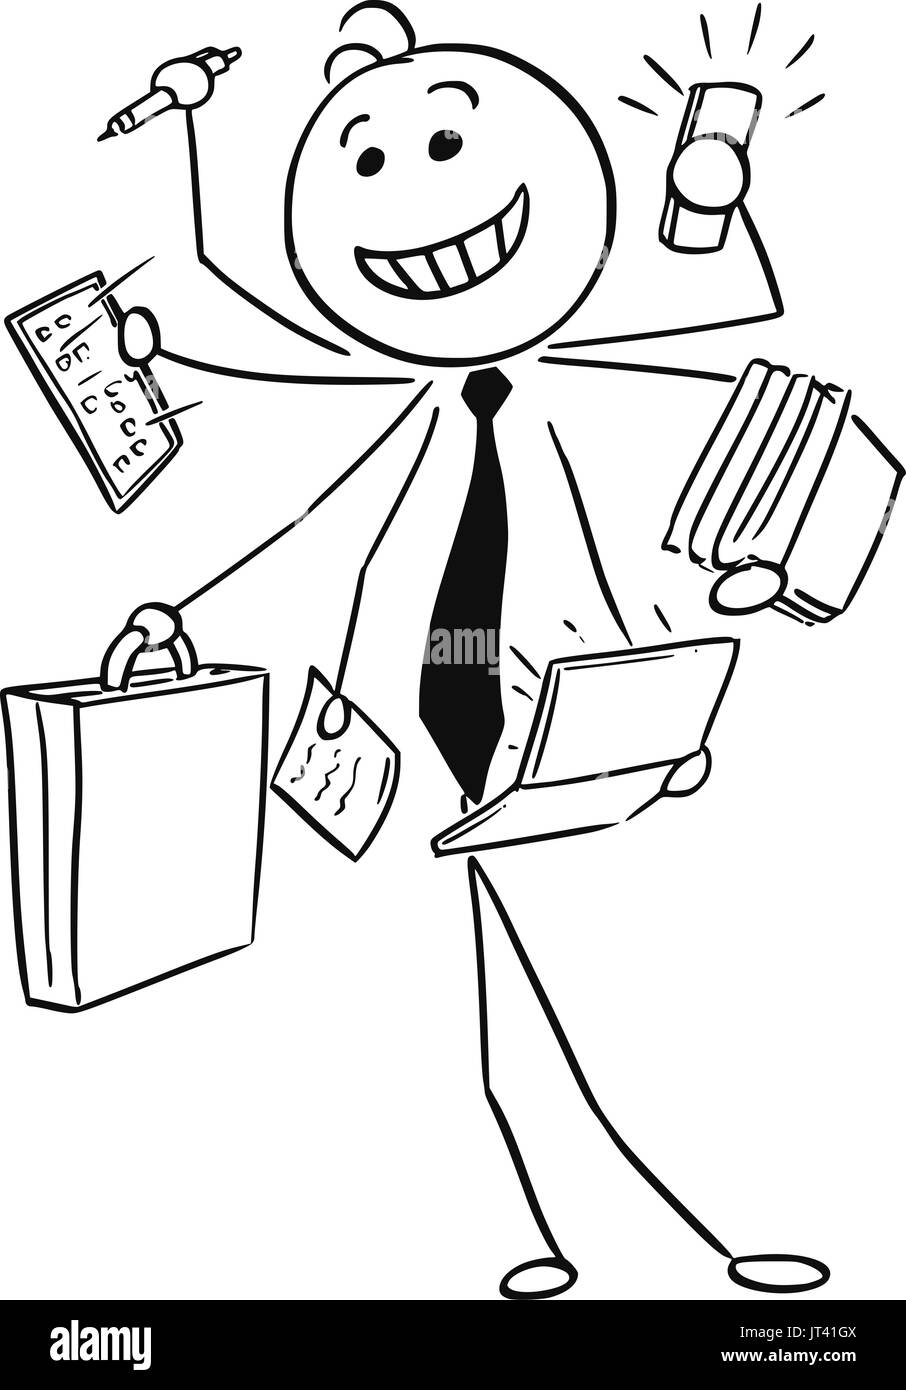 Vettore di Cartoon stick uomo illustrazione di successo sorridenti d affari o venditore lavorando su molti compiti nello stesso tempo, concettuale idea di uomo wit Illustrazione Vettoriale